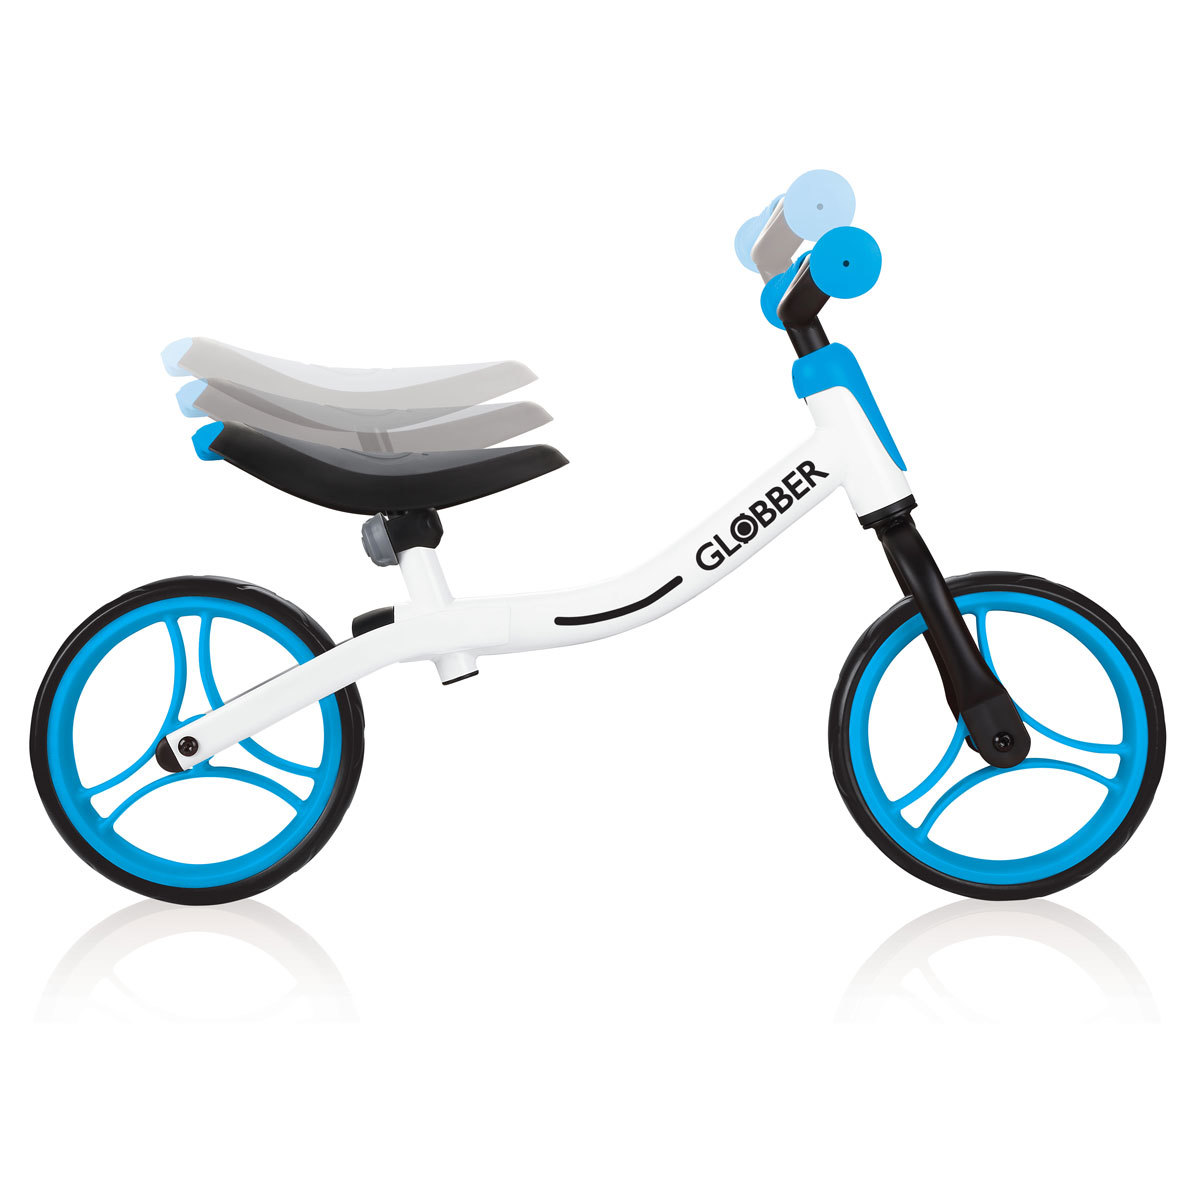 Side image with adjustable seat globber bike